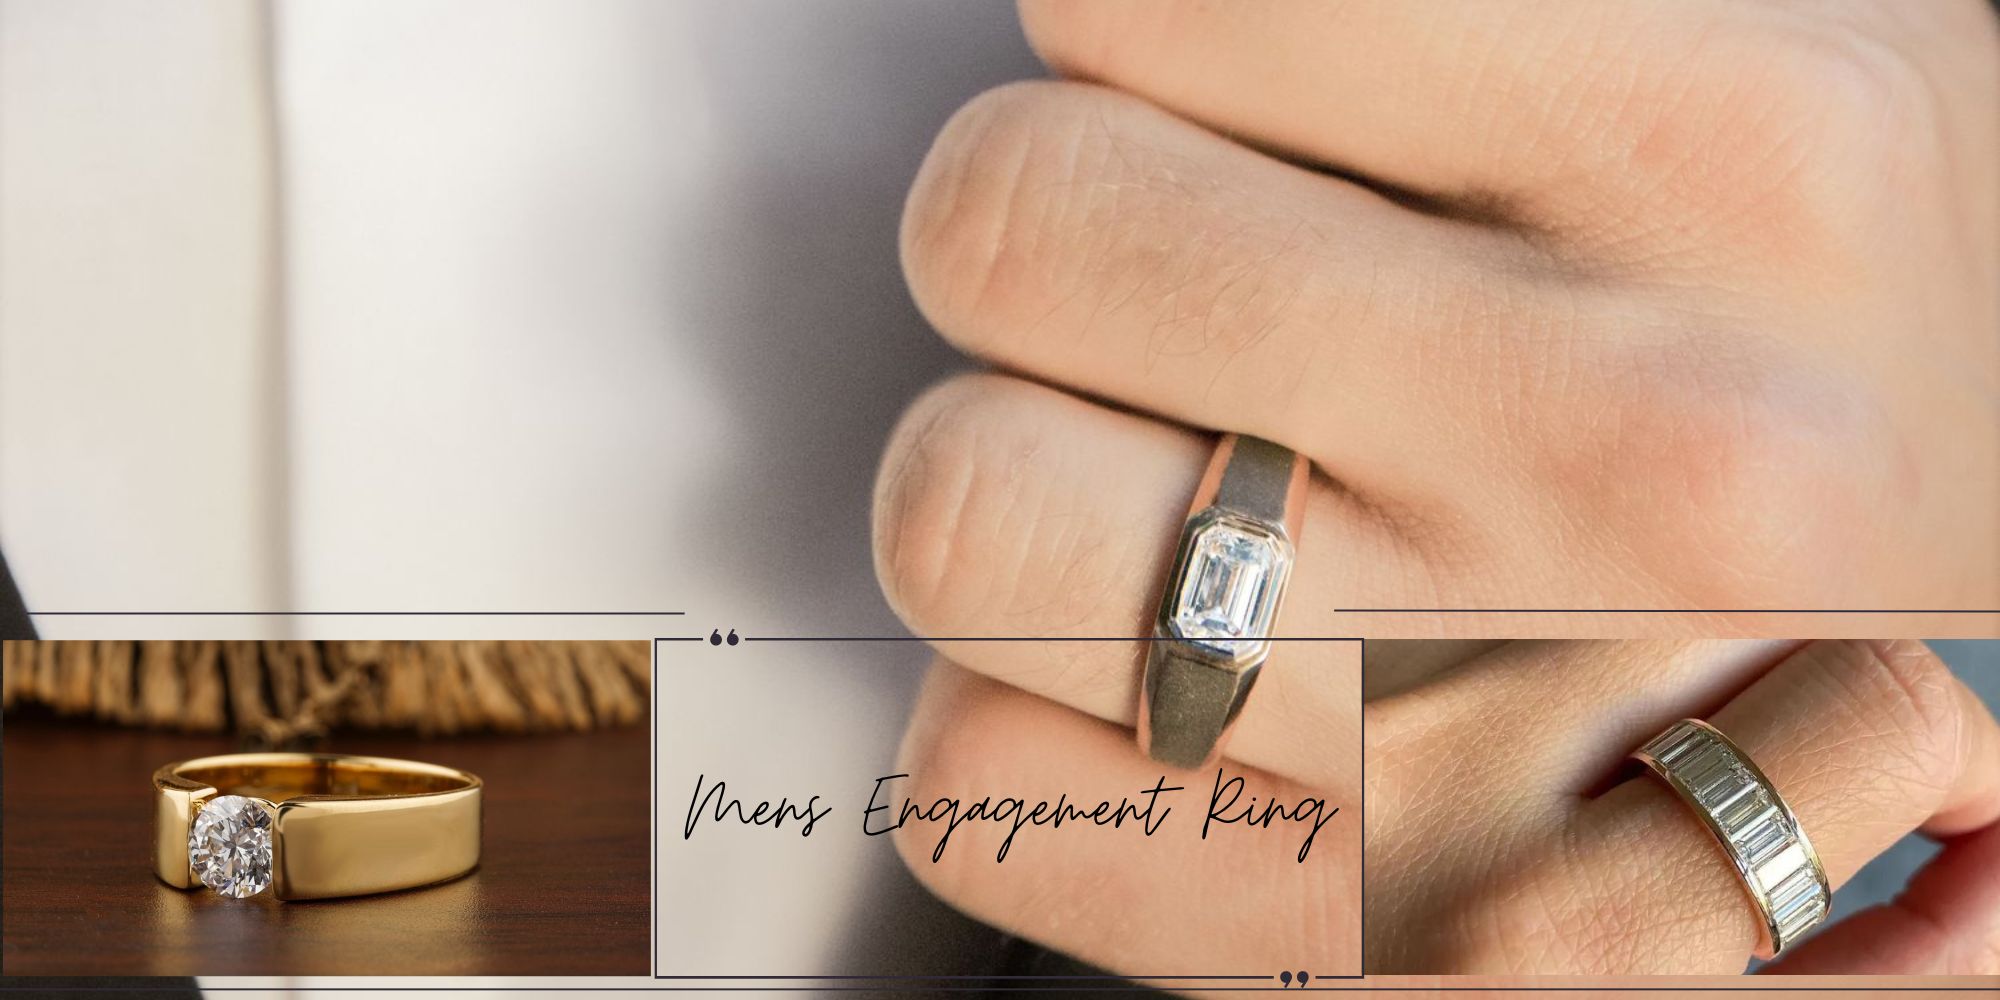 Do Men wear Engagement Rings?